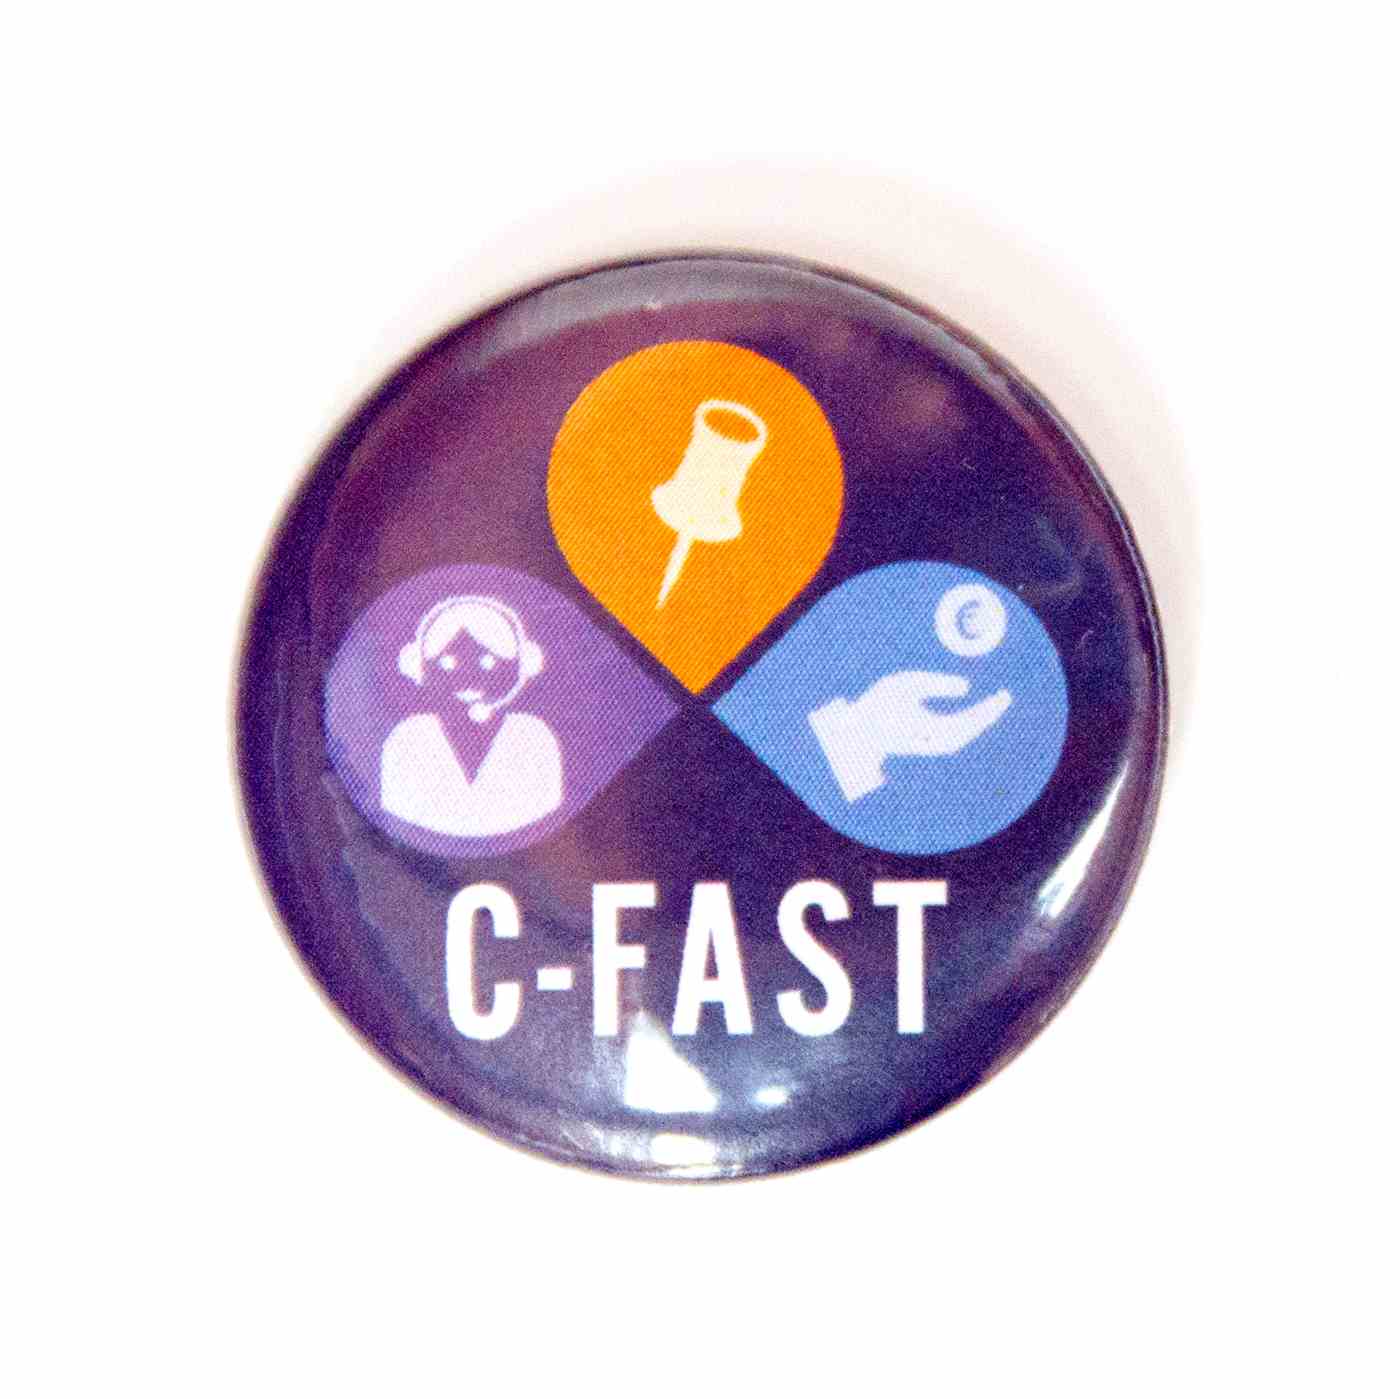 Cefora C-FAST button